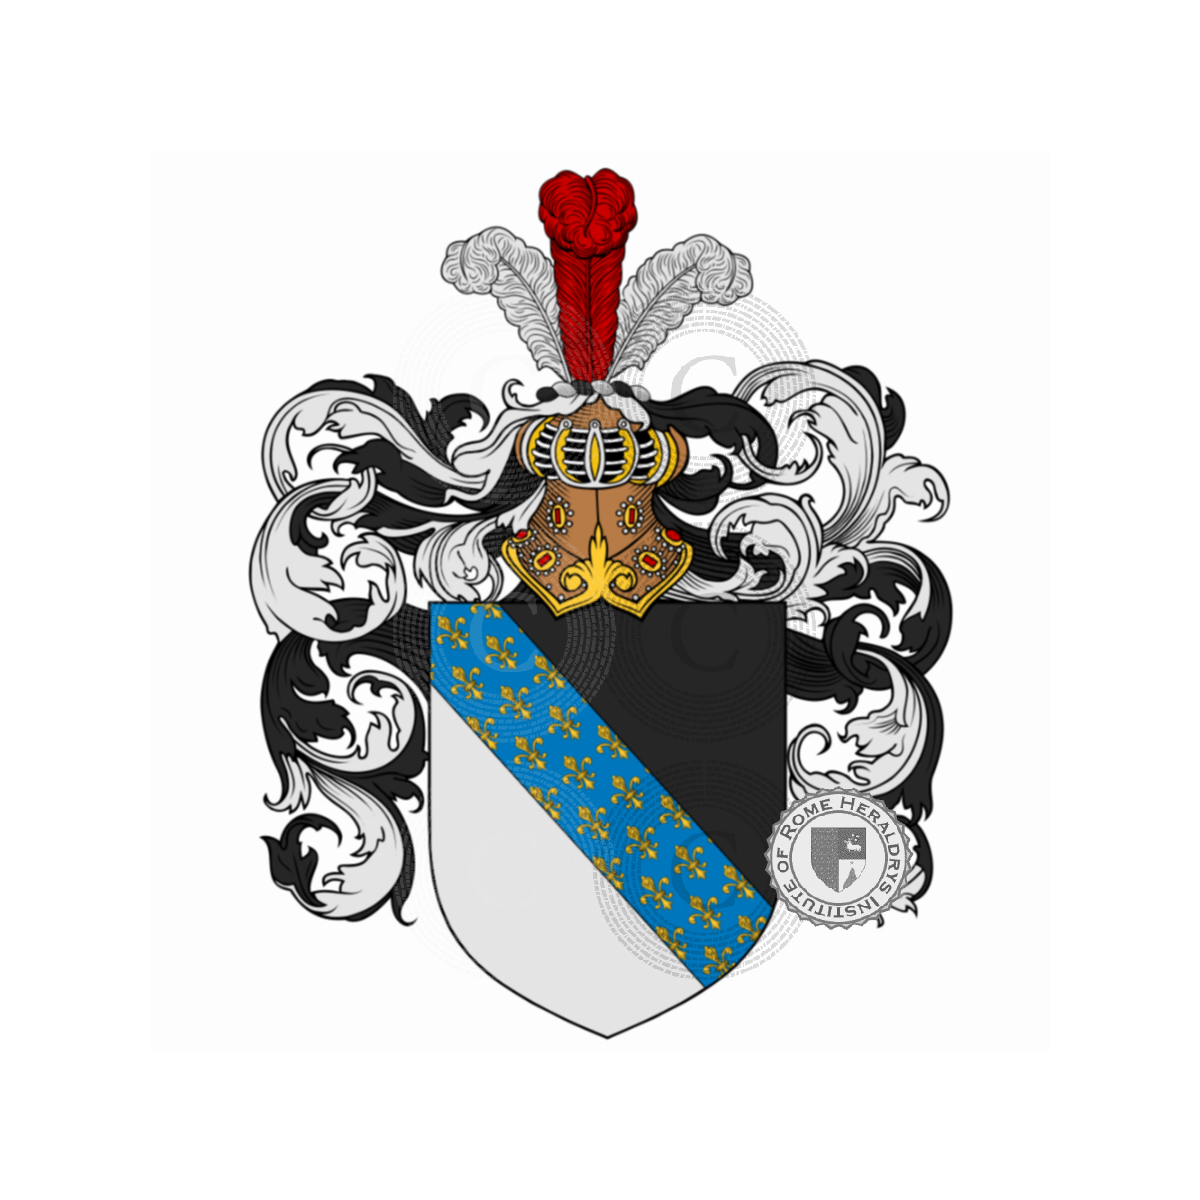 Coat of arms of familyVettori, Rettore,Vettorazzi,Vettore,Vettori del Drago